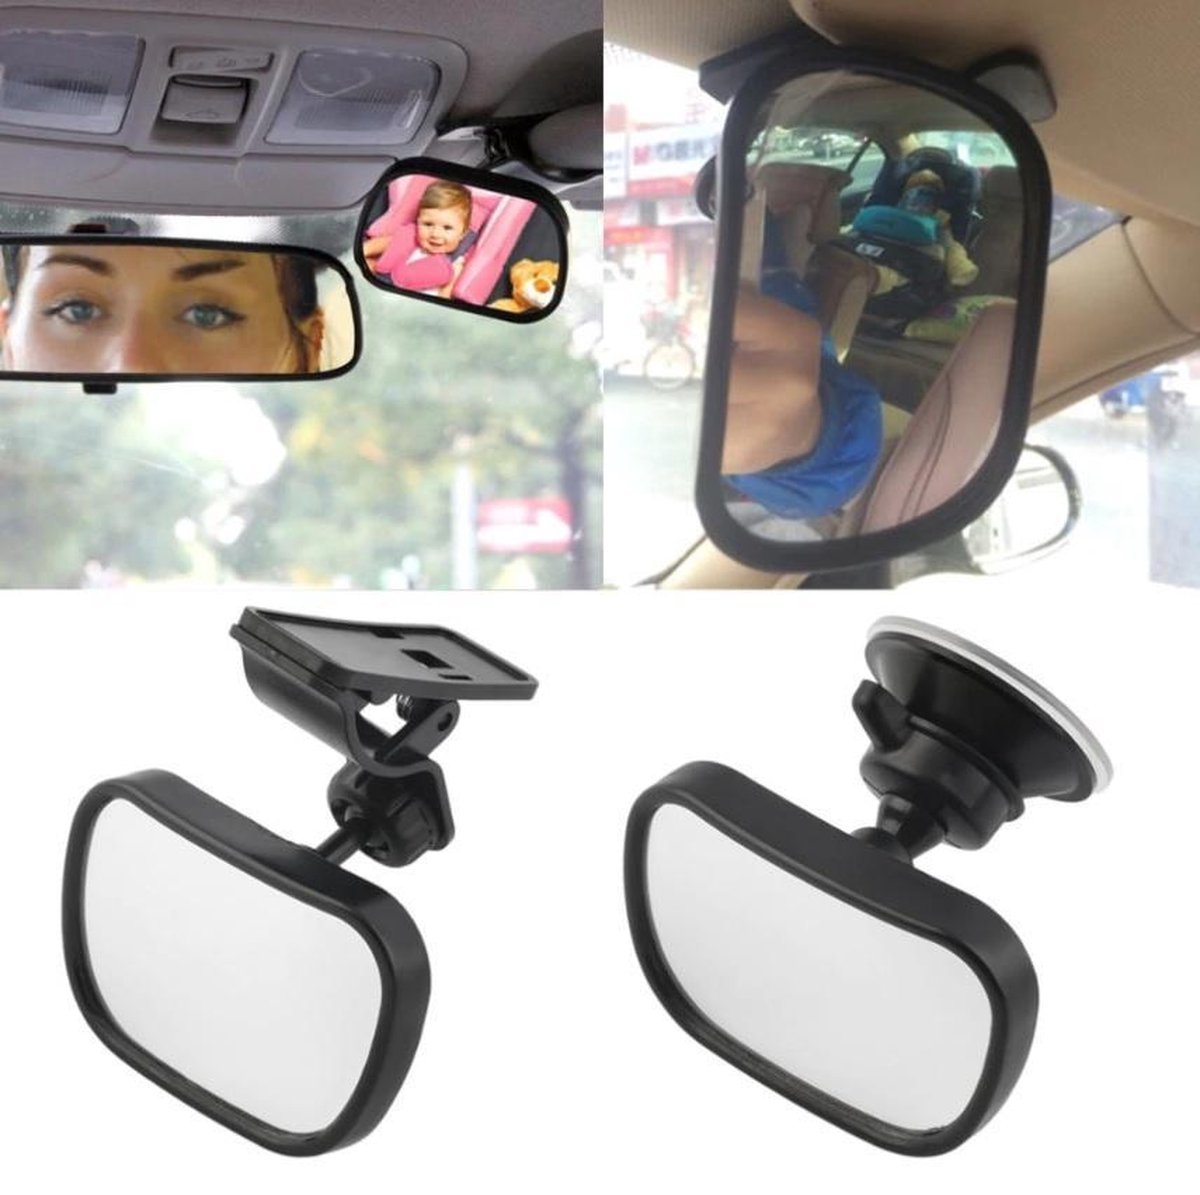 HeppieBabie - Autospiegel Baby 360° Verstelbaar - XL Formaat - Met  Gratis